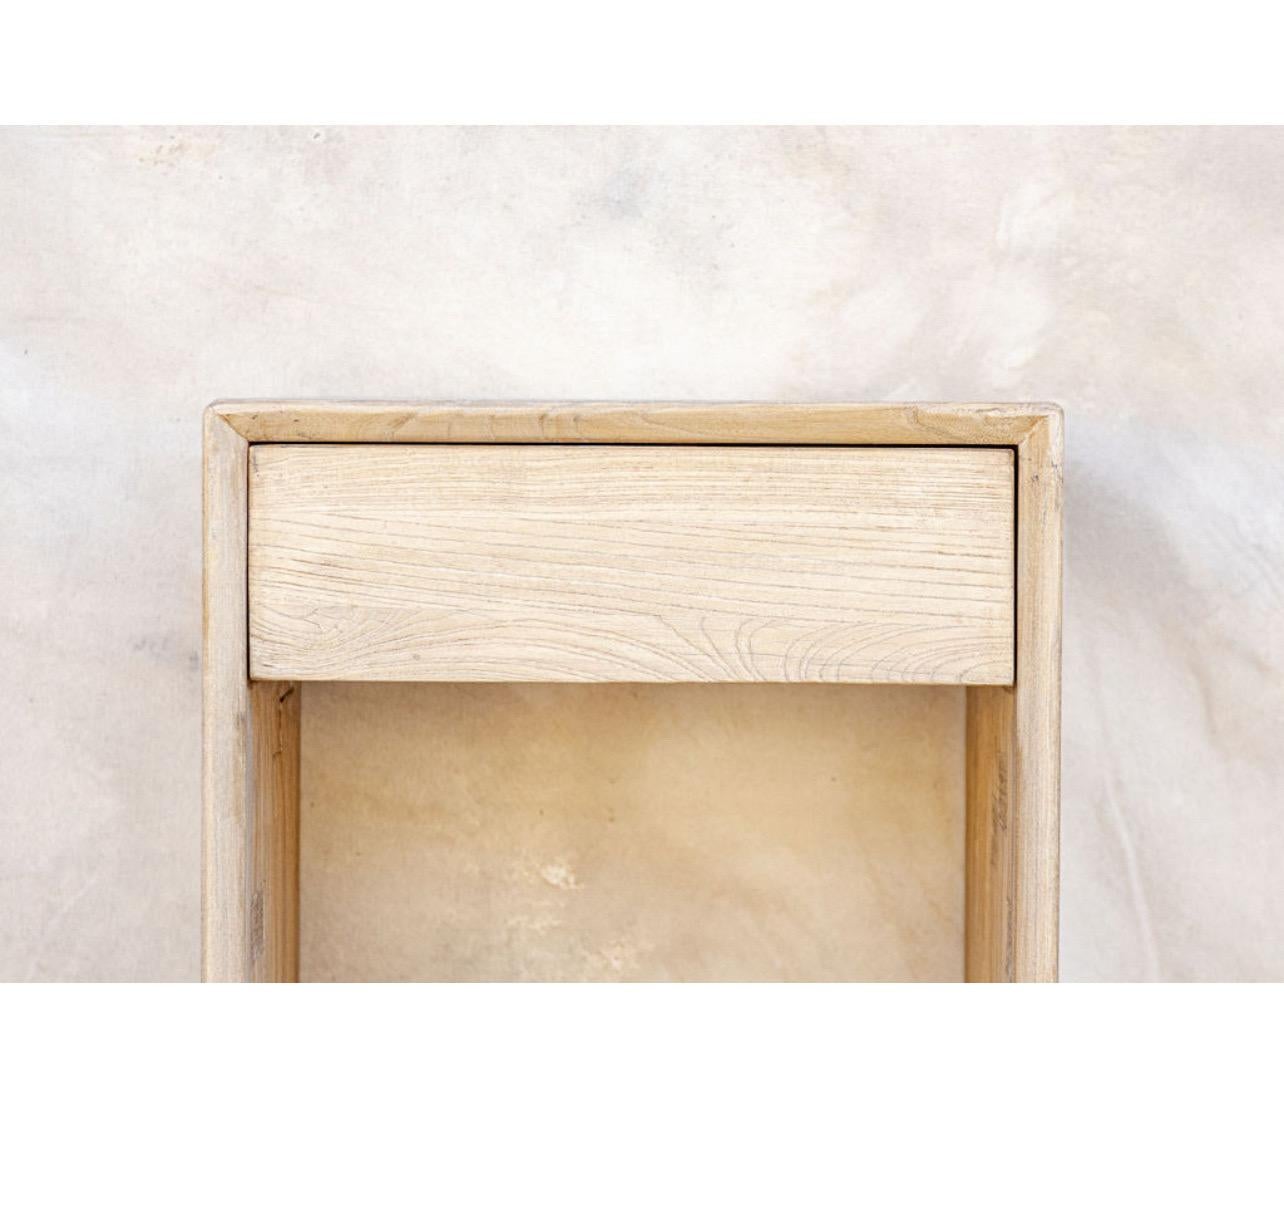 Fabriqué à partir de bois d'orme vintage provenant d'Europe et d'Asie. Nous adorons cette pièce avec son design minimaliste des tiroirs et ses tons de bois naturel. 